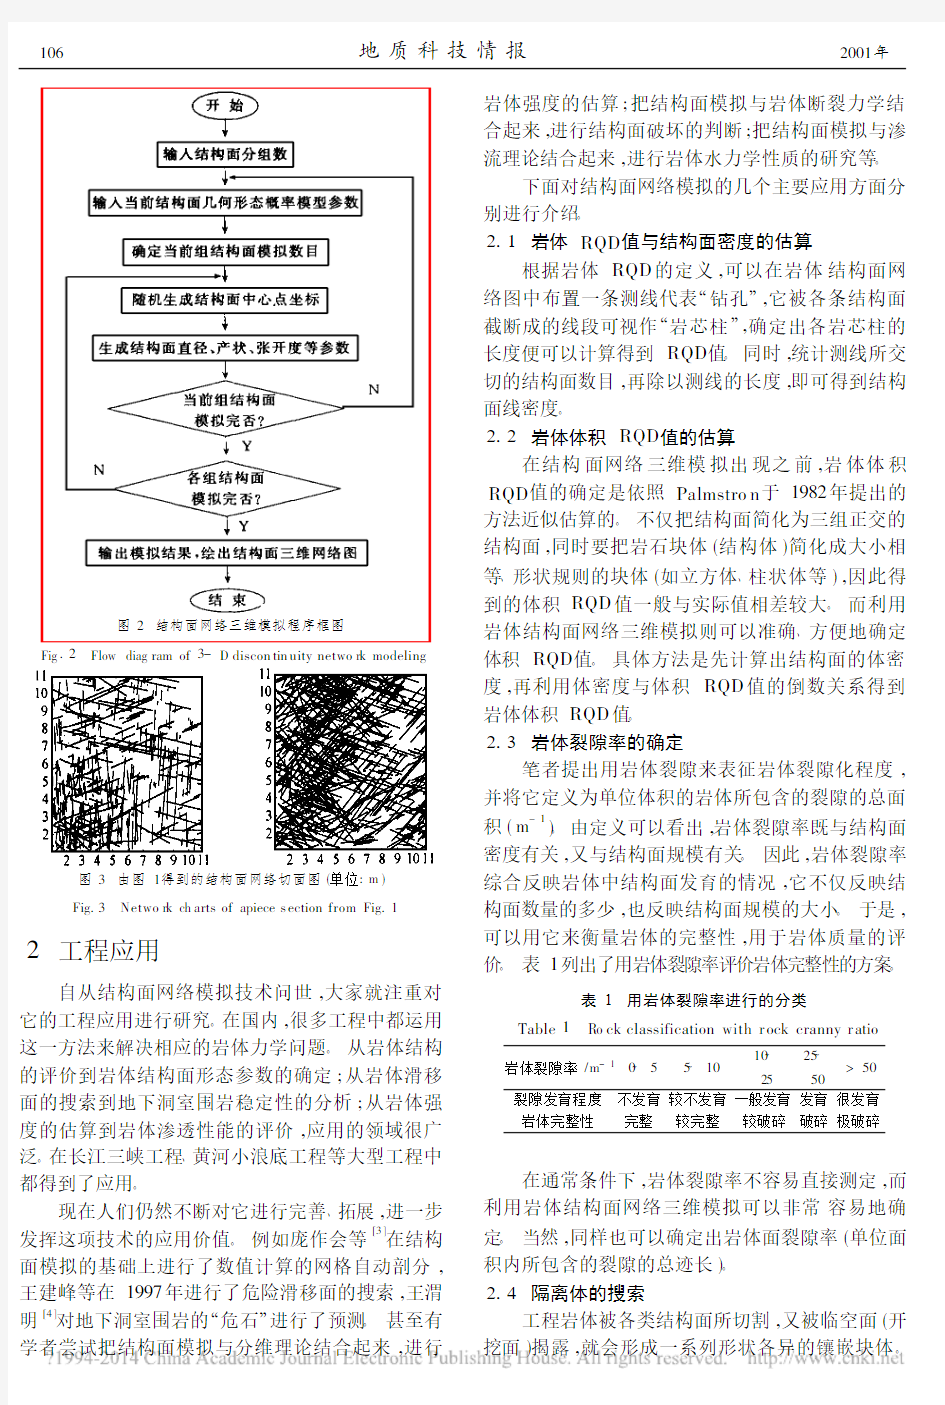 岩体结构面网络模拟技术研究进展_贾洪彪